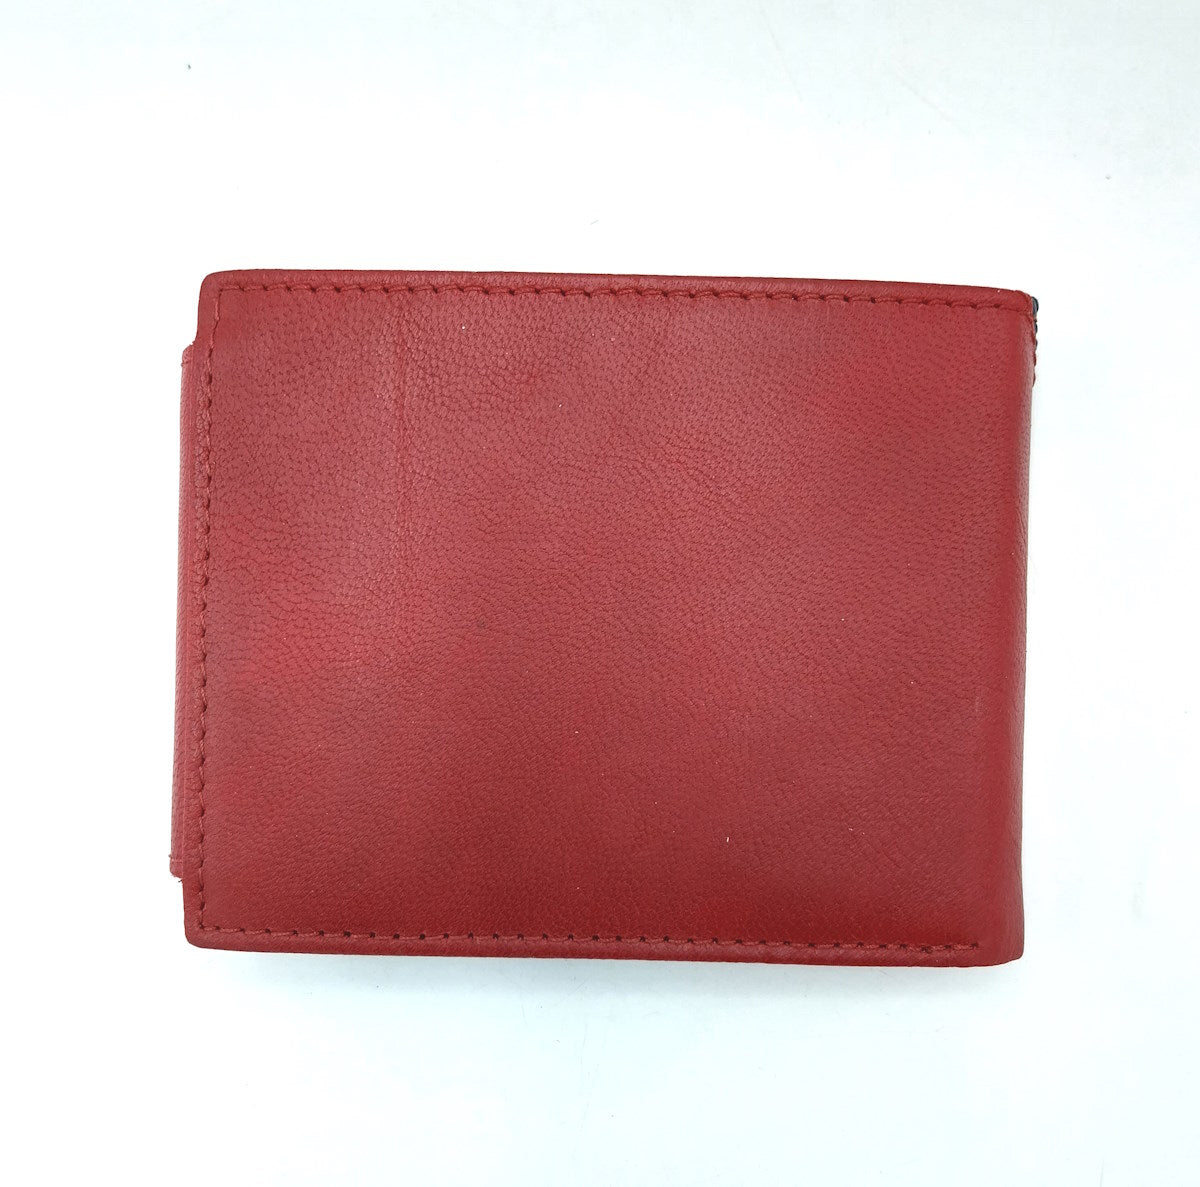 Genuine leather wallet, Wampum, art. pdk397-1